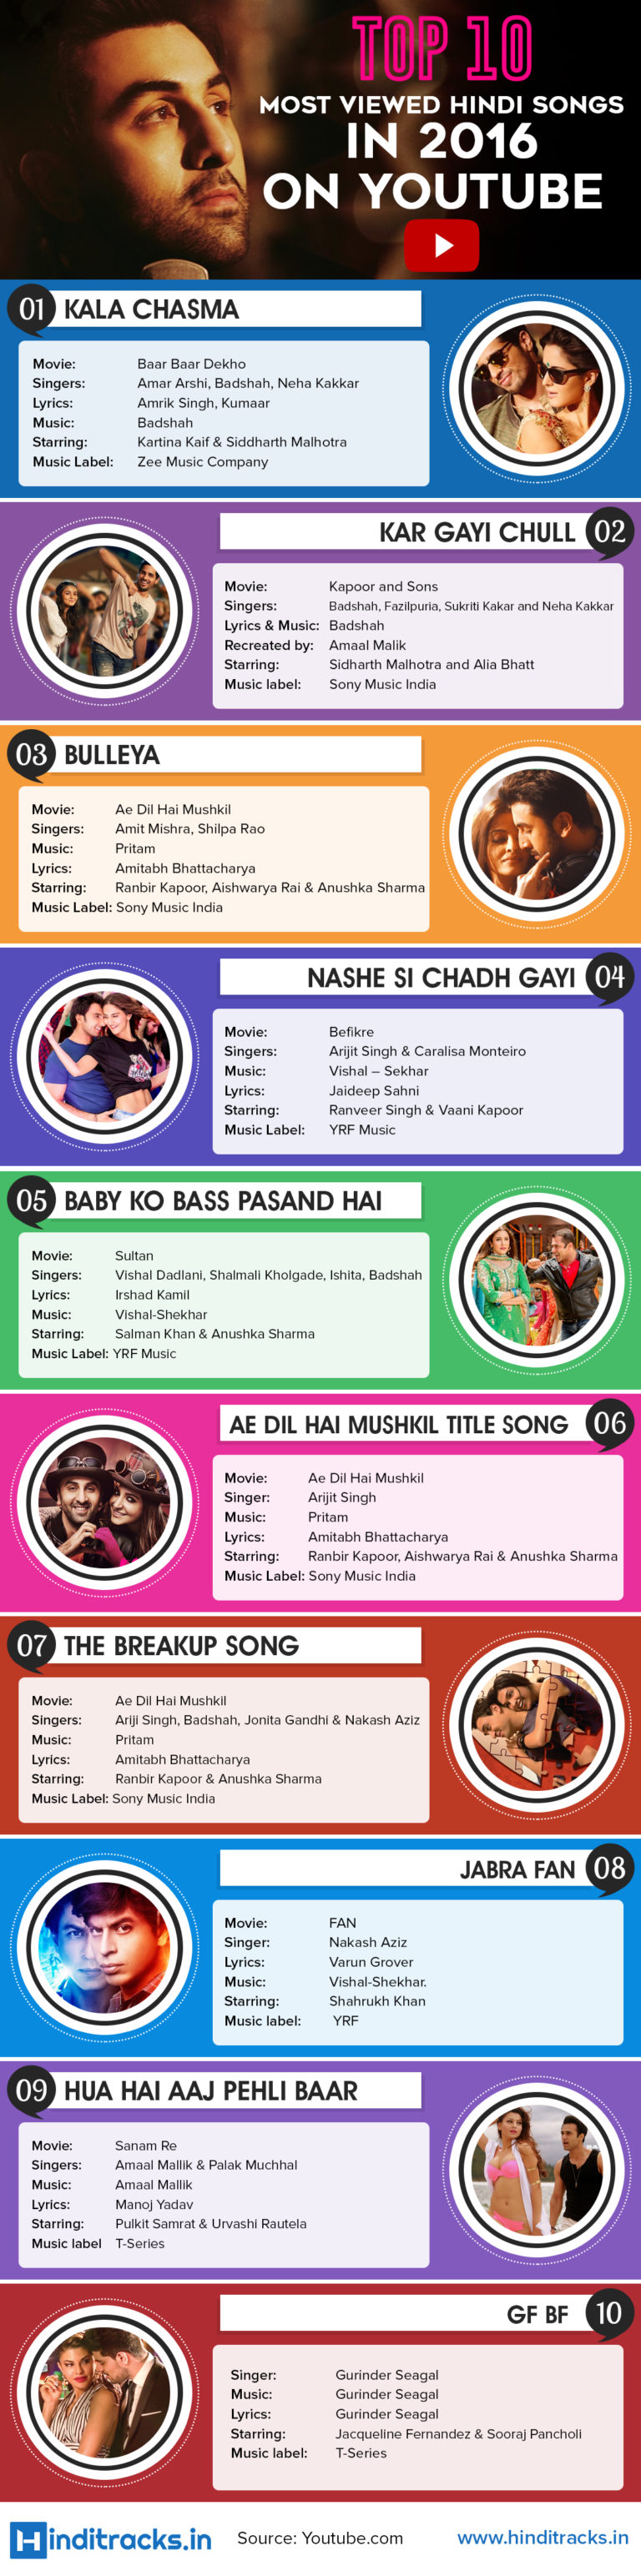 Top 10 most viewed Hindi Songs